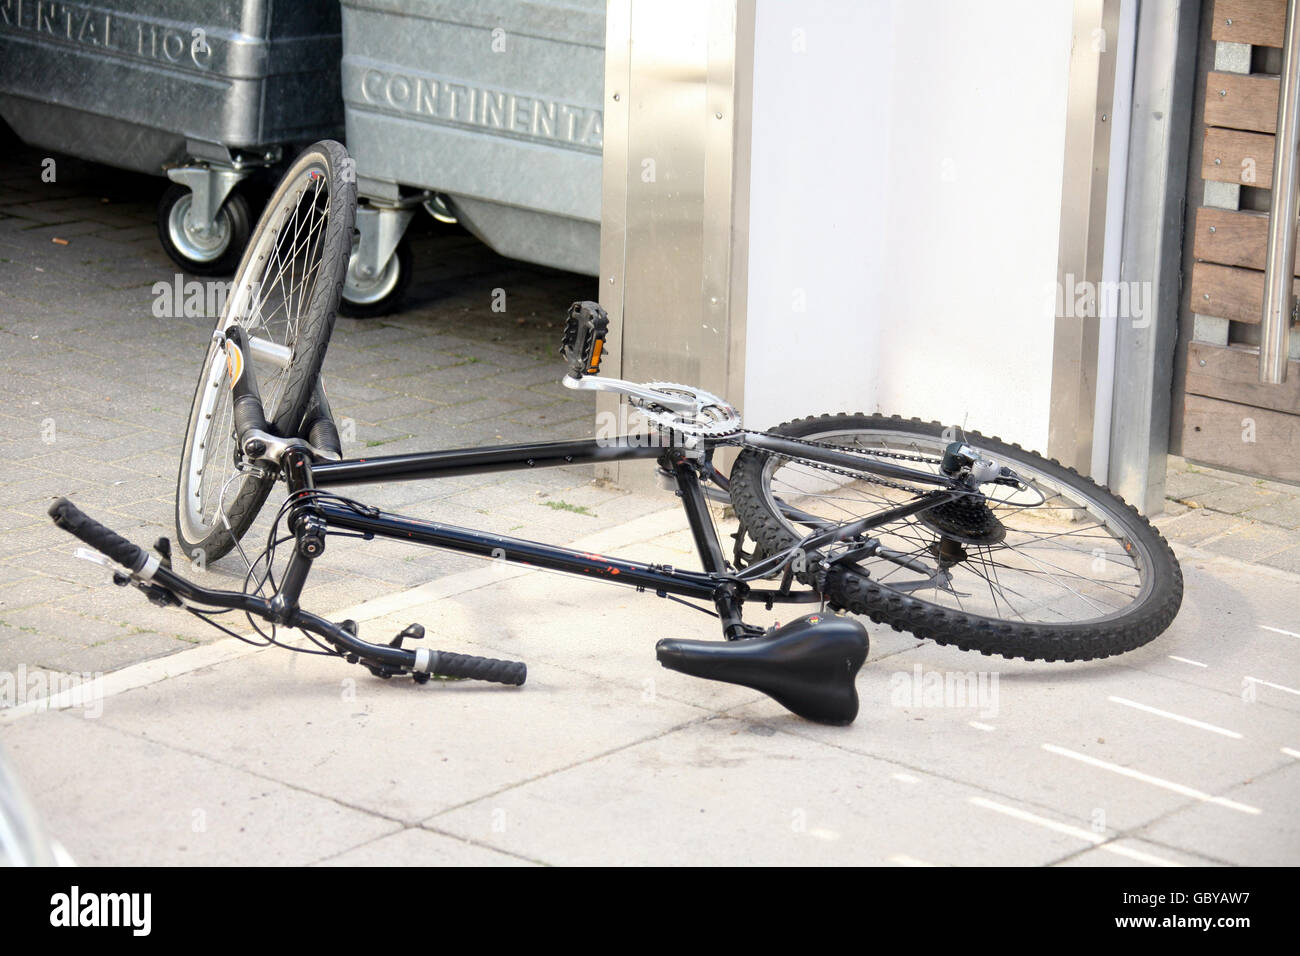 Una mountain bike sulla scena di Blackfriars Road dove una pattuglia di polizia è stata sparata nelle vicinanze in The Cut, Waterloo. Foto Stock